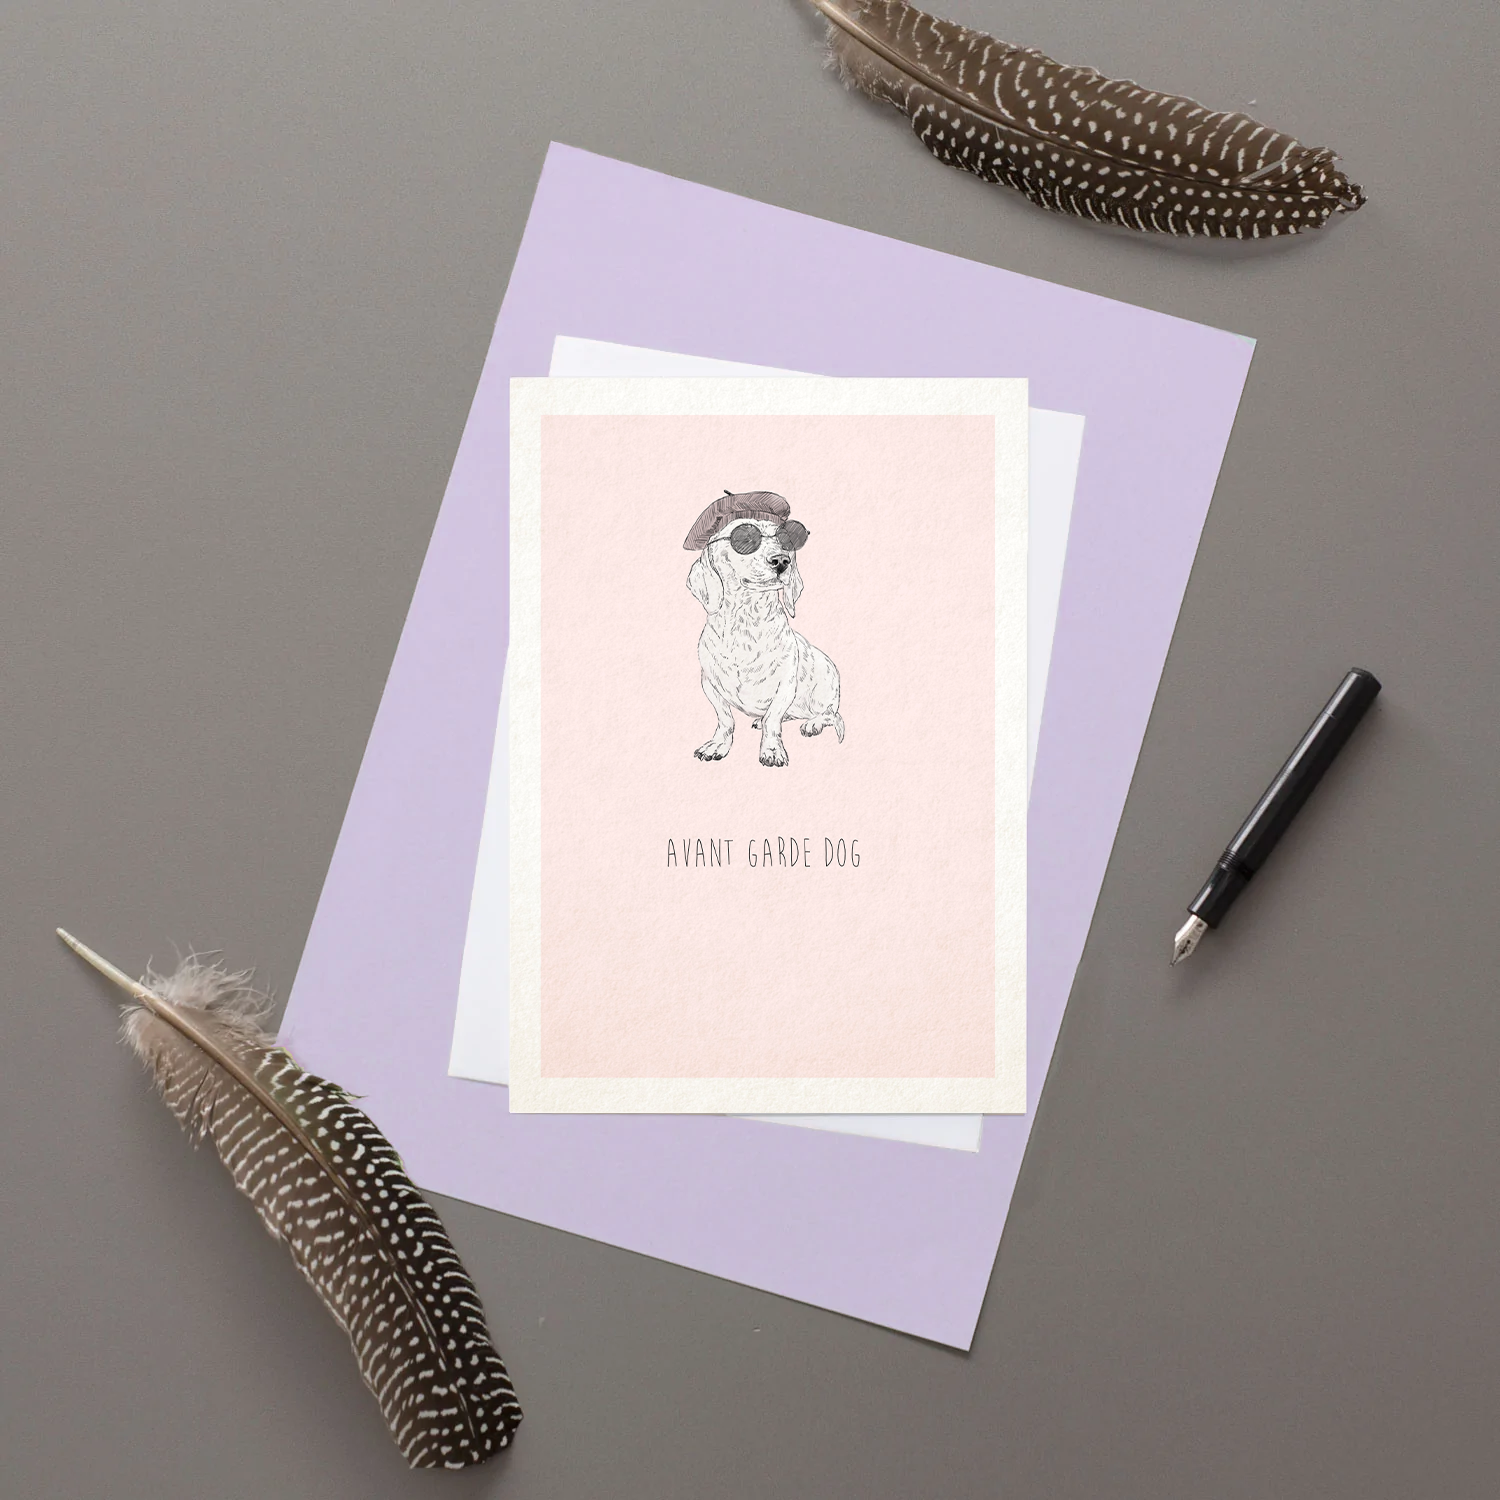 Avant Garde Dog - Greeting Card